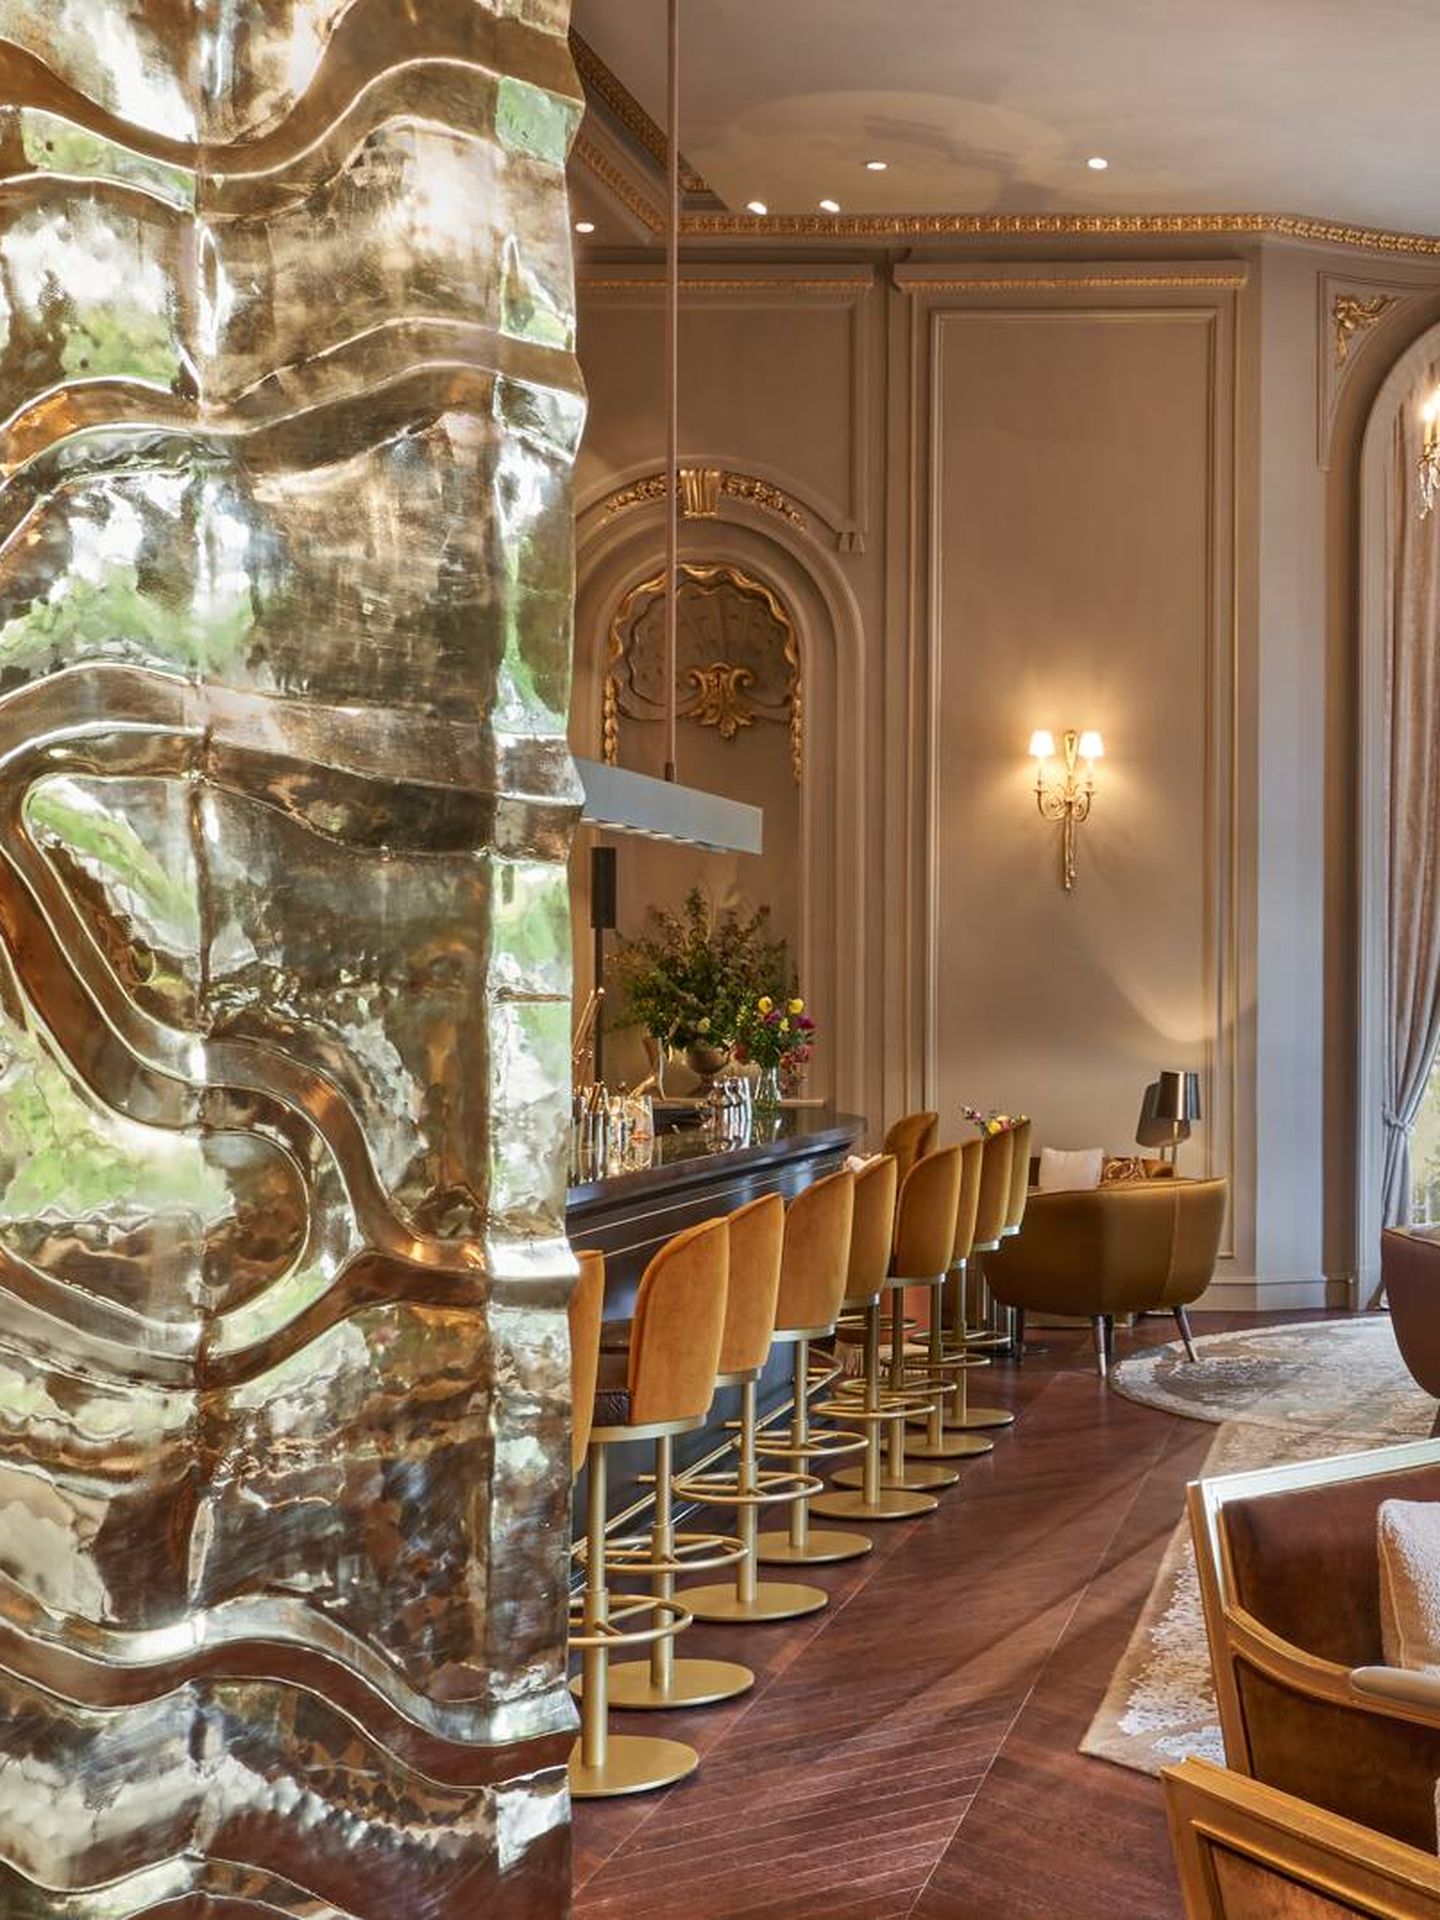 Pictura o la muy divina coctelería del Mandarin Oriental Ritz Madrid. (Cortesía)